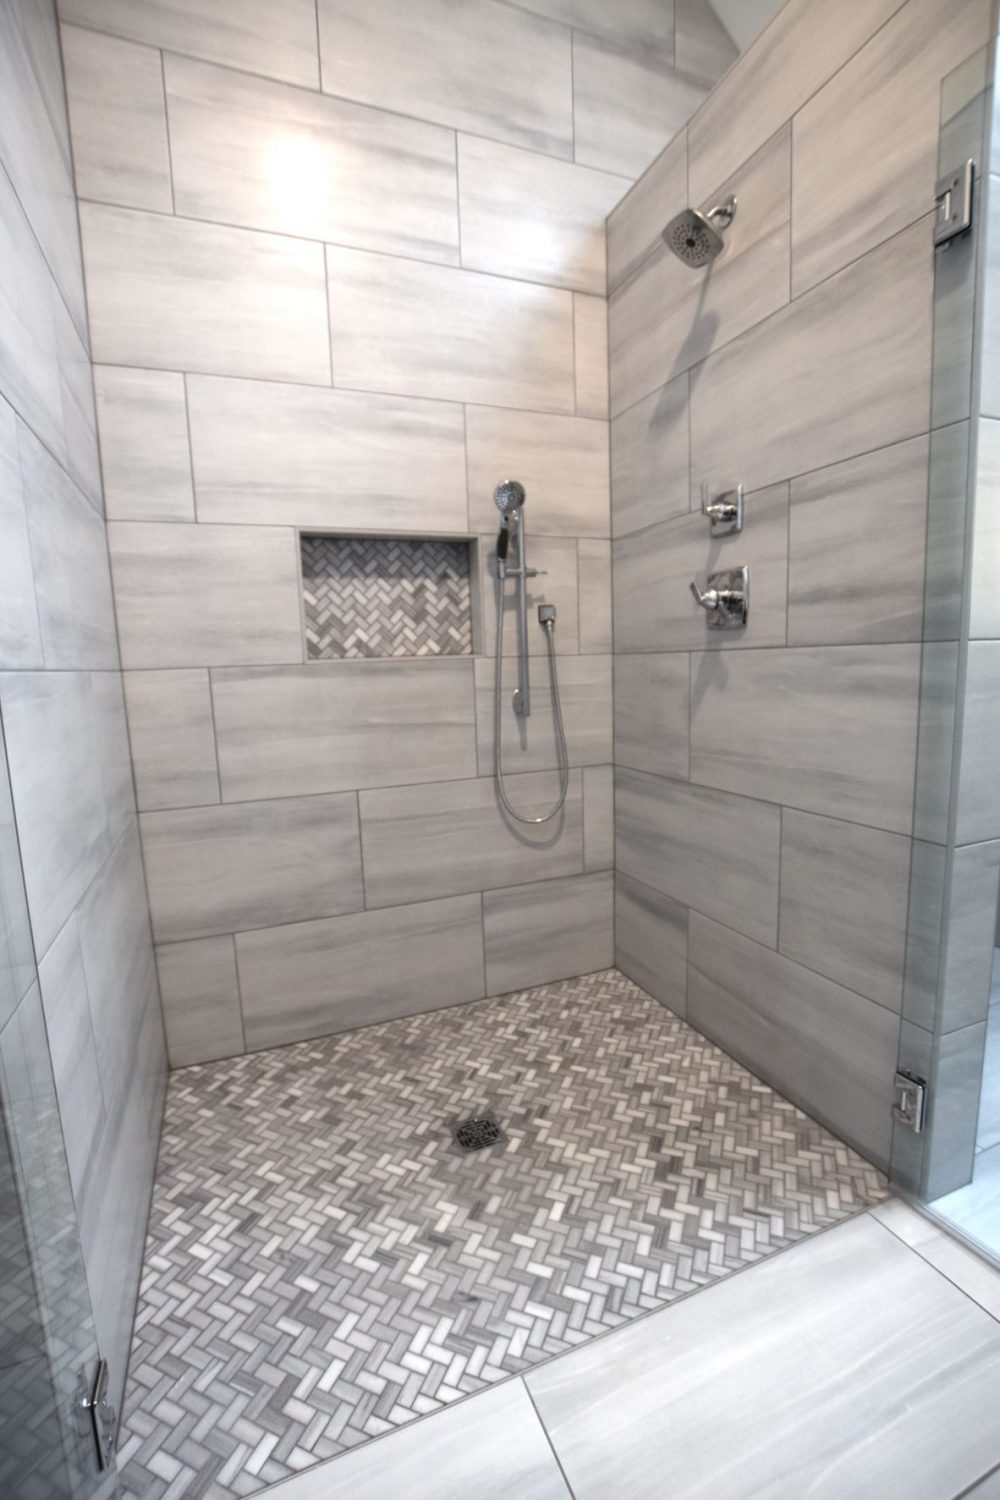 Herringbone tile shower floor with 16"X30" tile and double free swinging glass door.s.